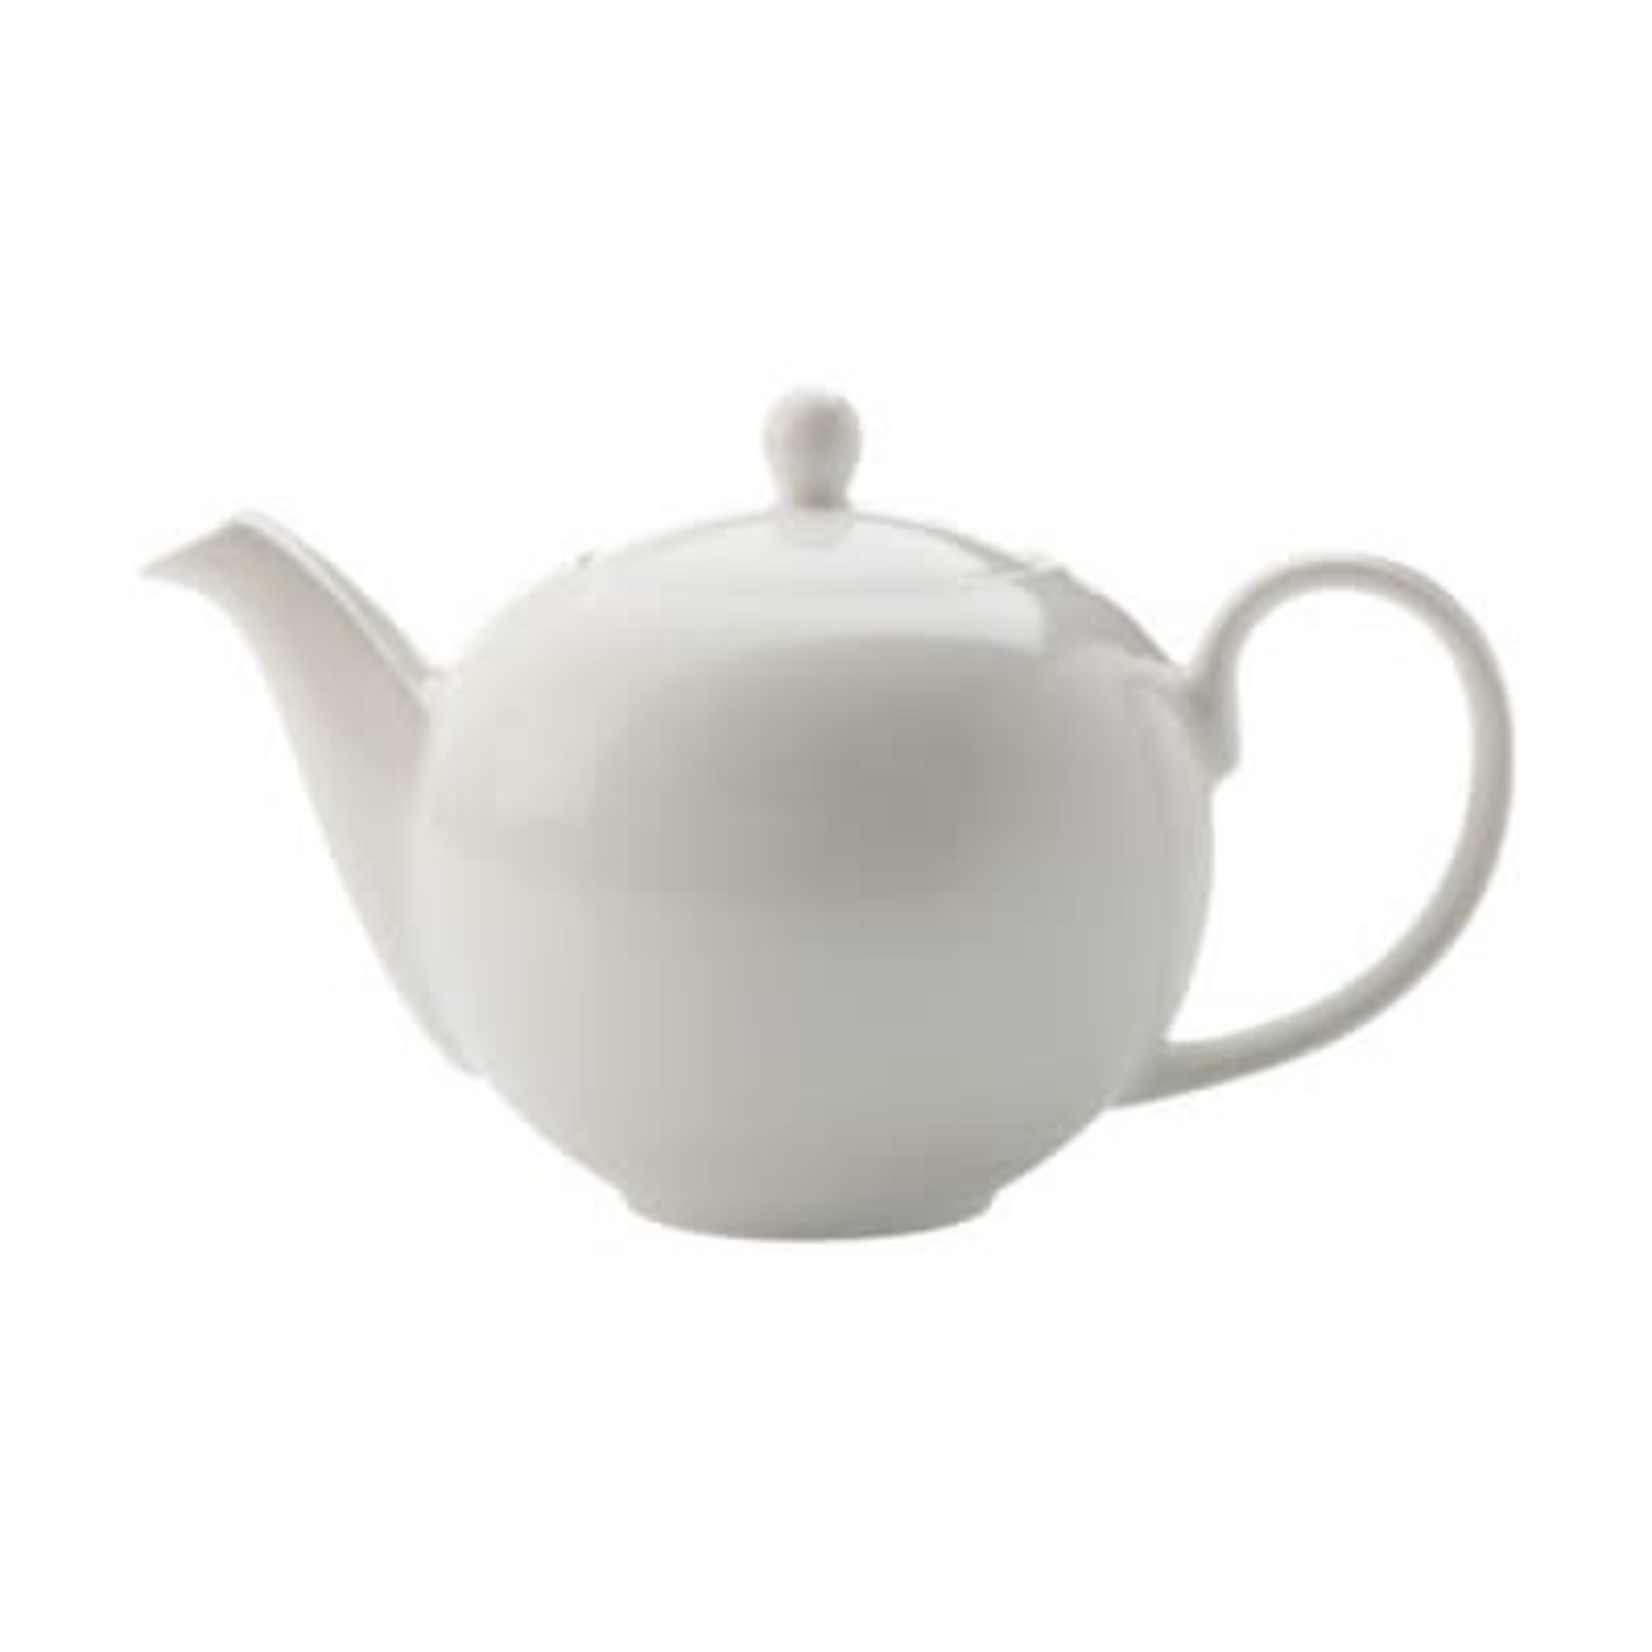 MAXWELL WILLIAMS MAXWELL WILLIAMS Teapot - White 1L